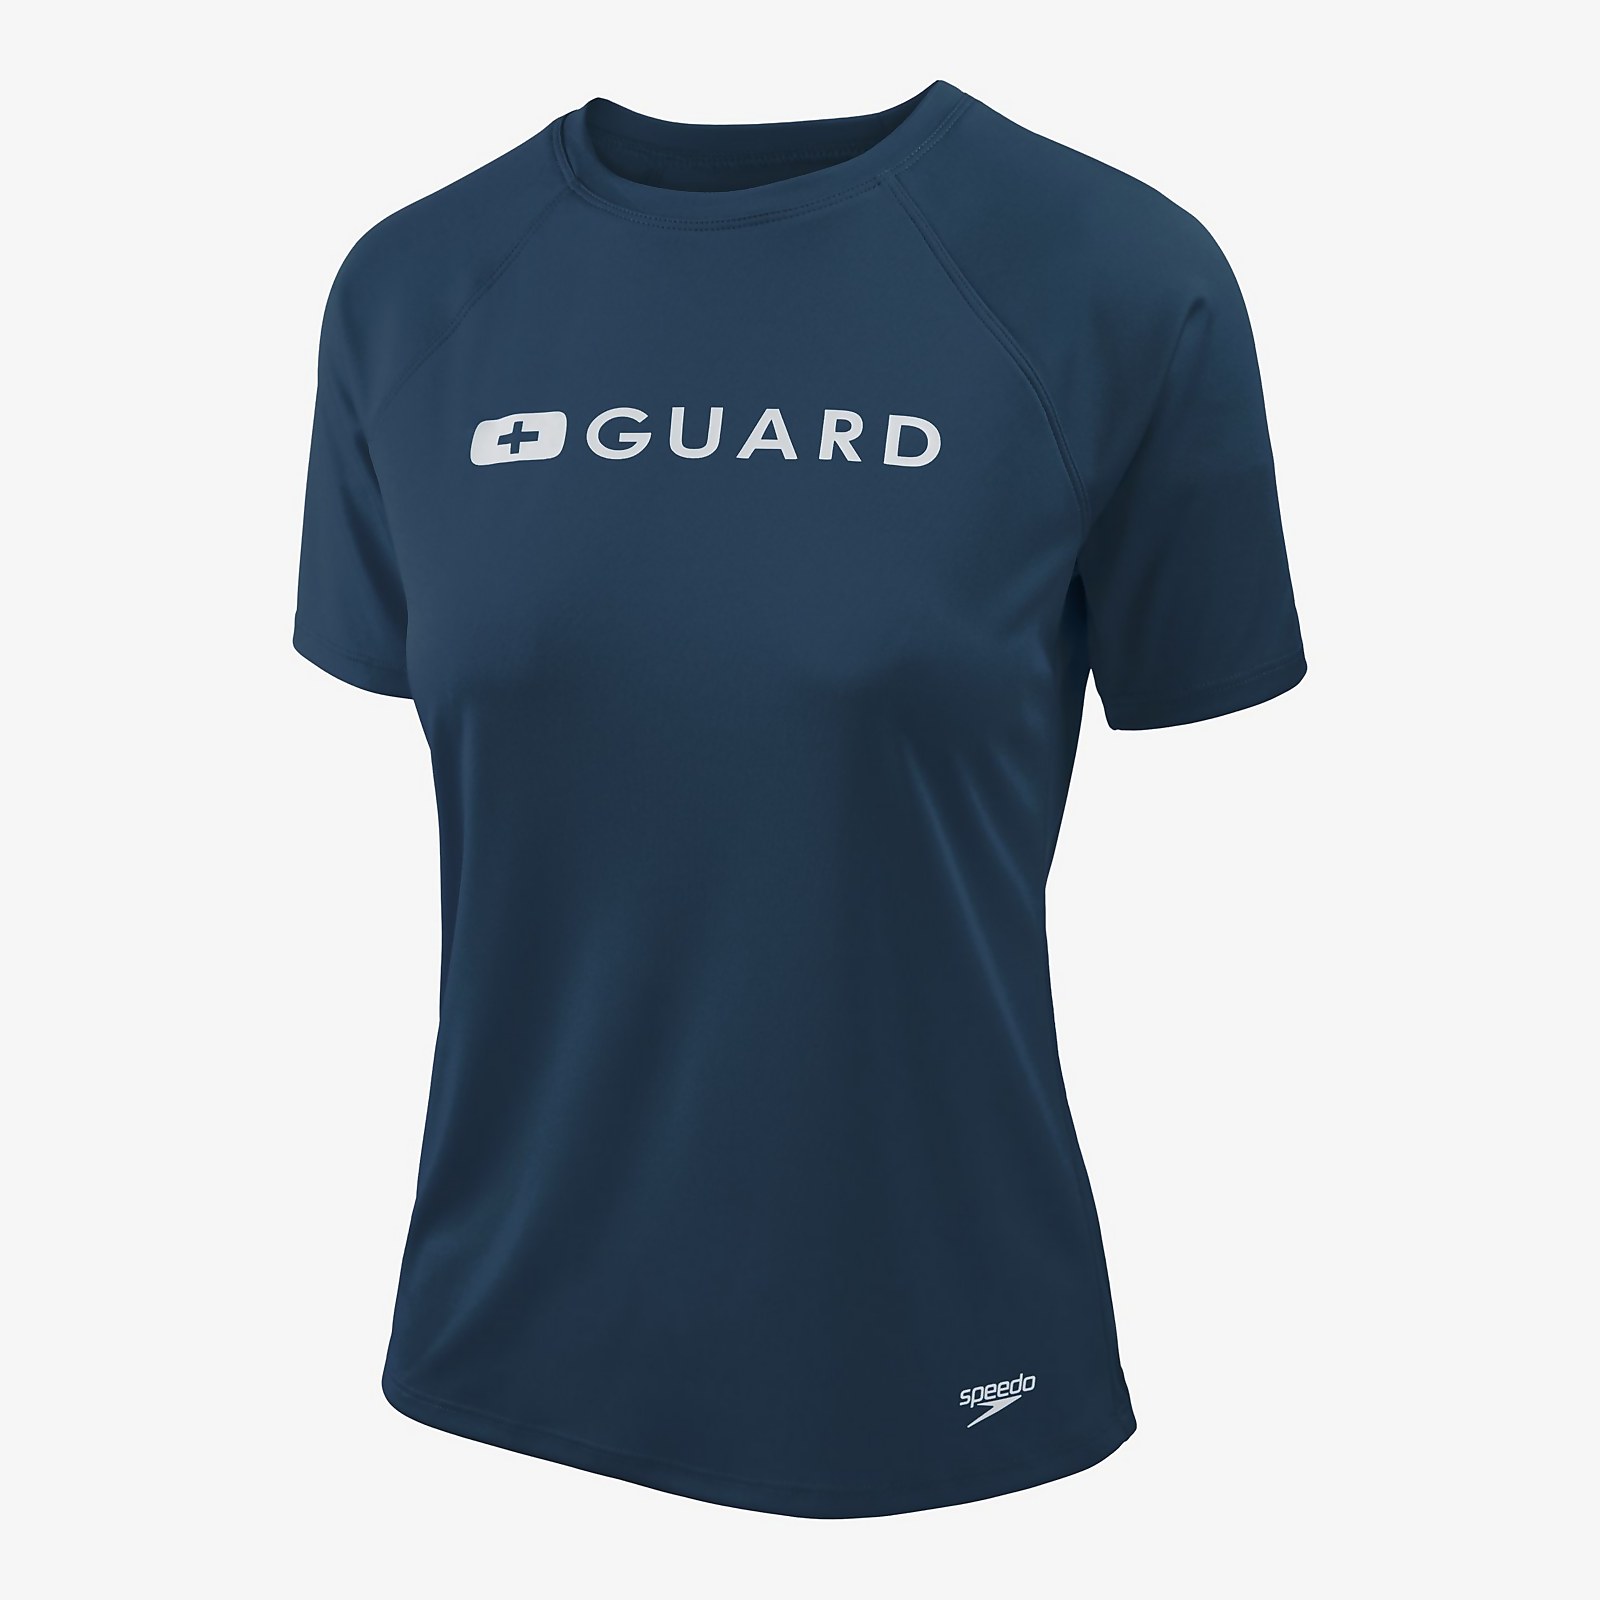 Speedo  Guard Short Sleeve Solid Swim Tee - S    : Navy